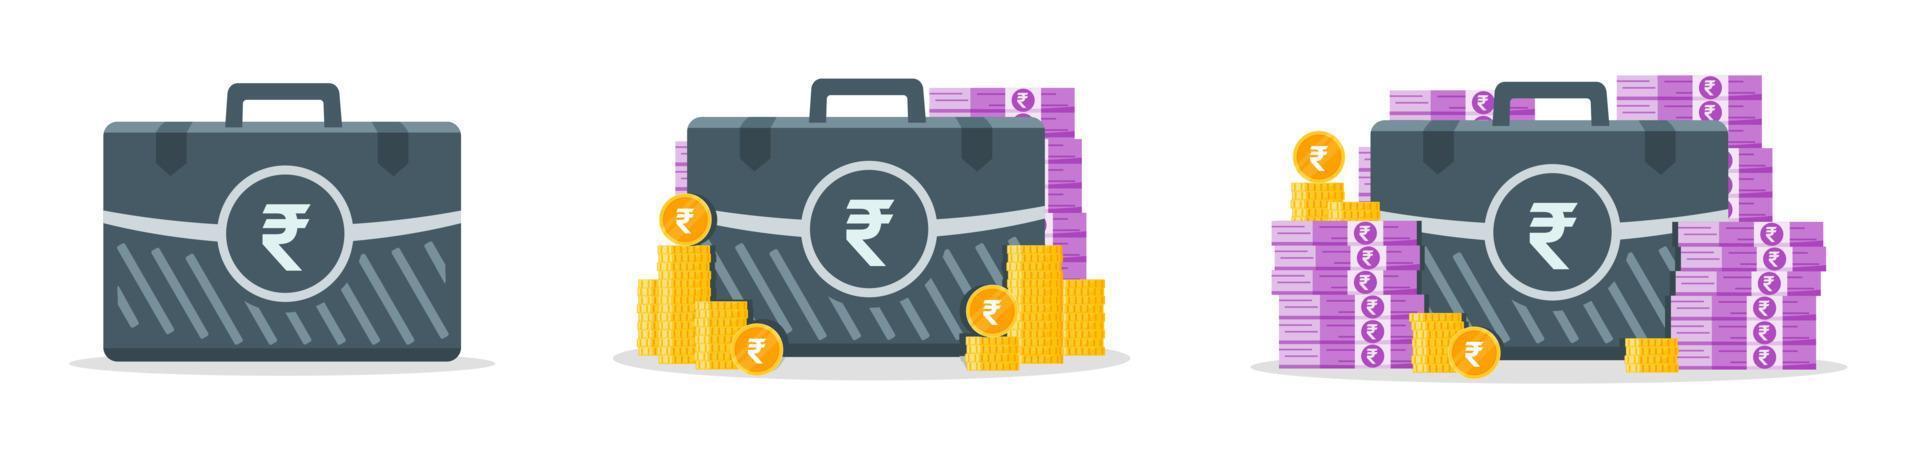 Icone della cassa dei soldi della rupia indiana vettore